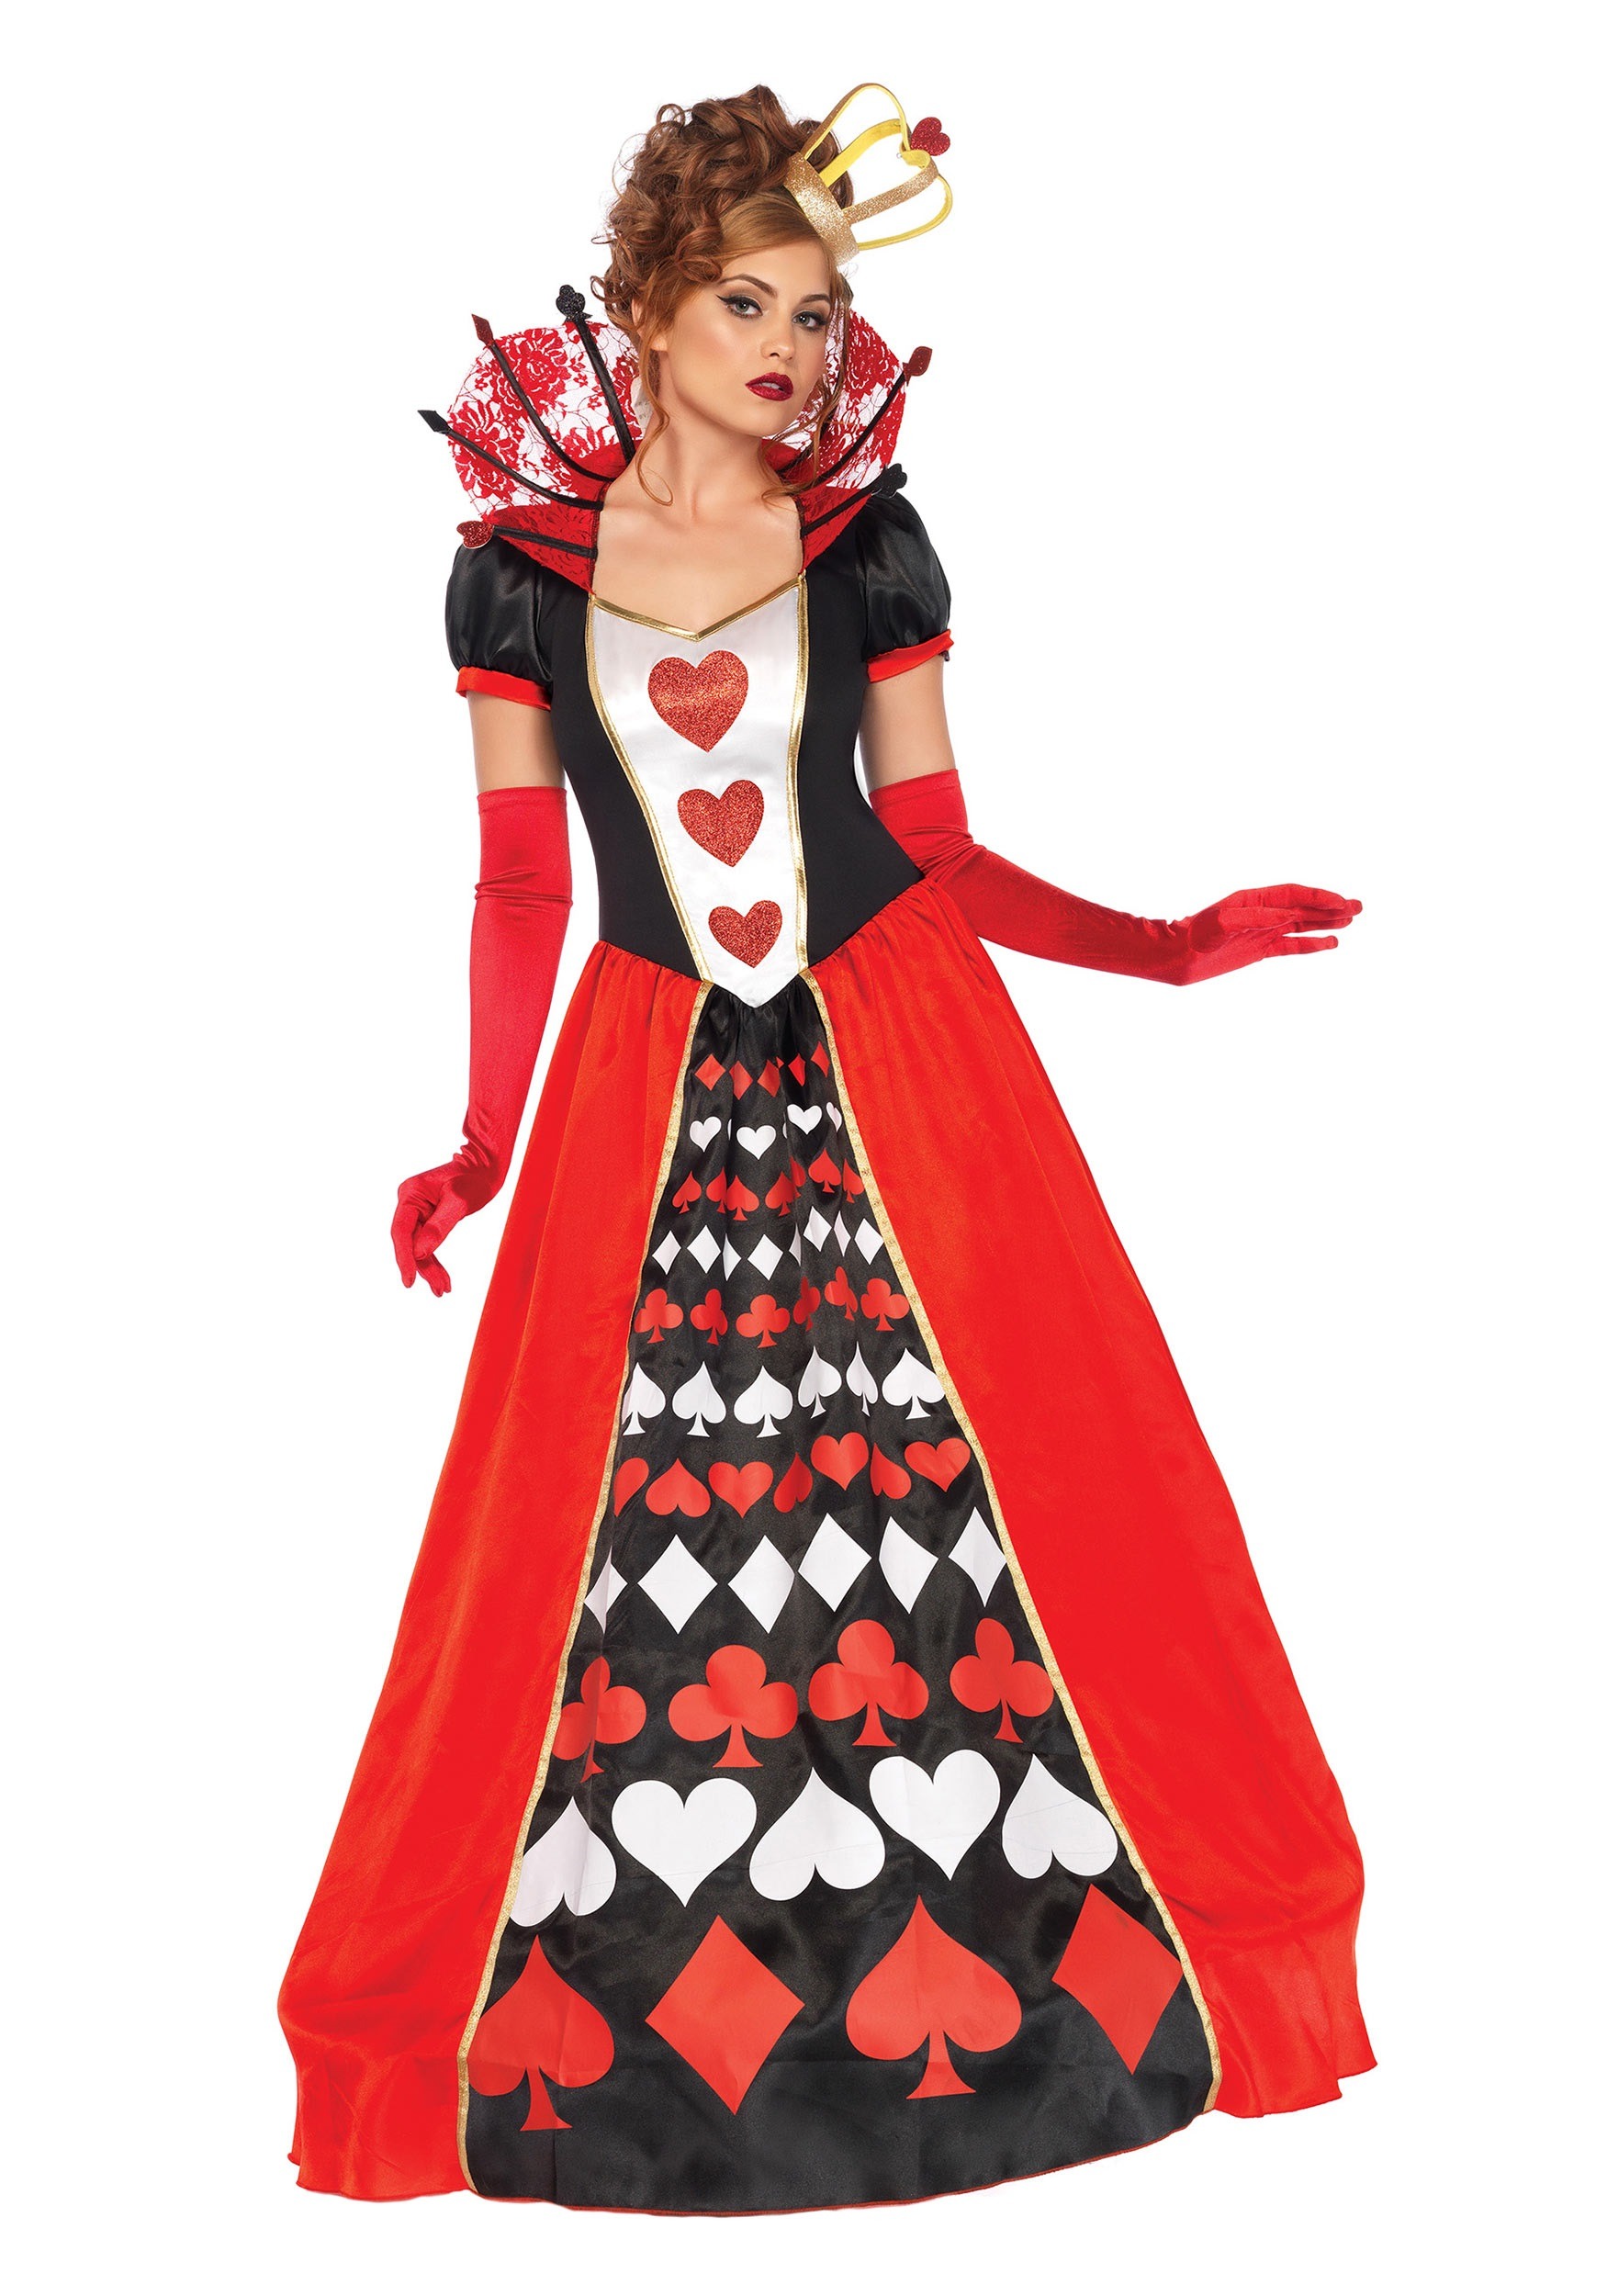 Women’s Deluxe Queen of Hearts Costume